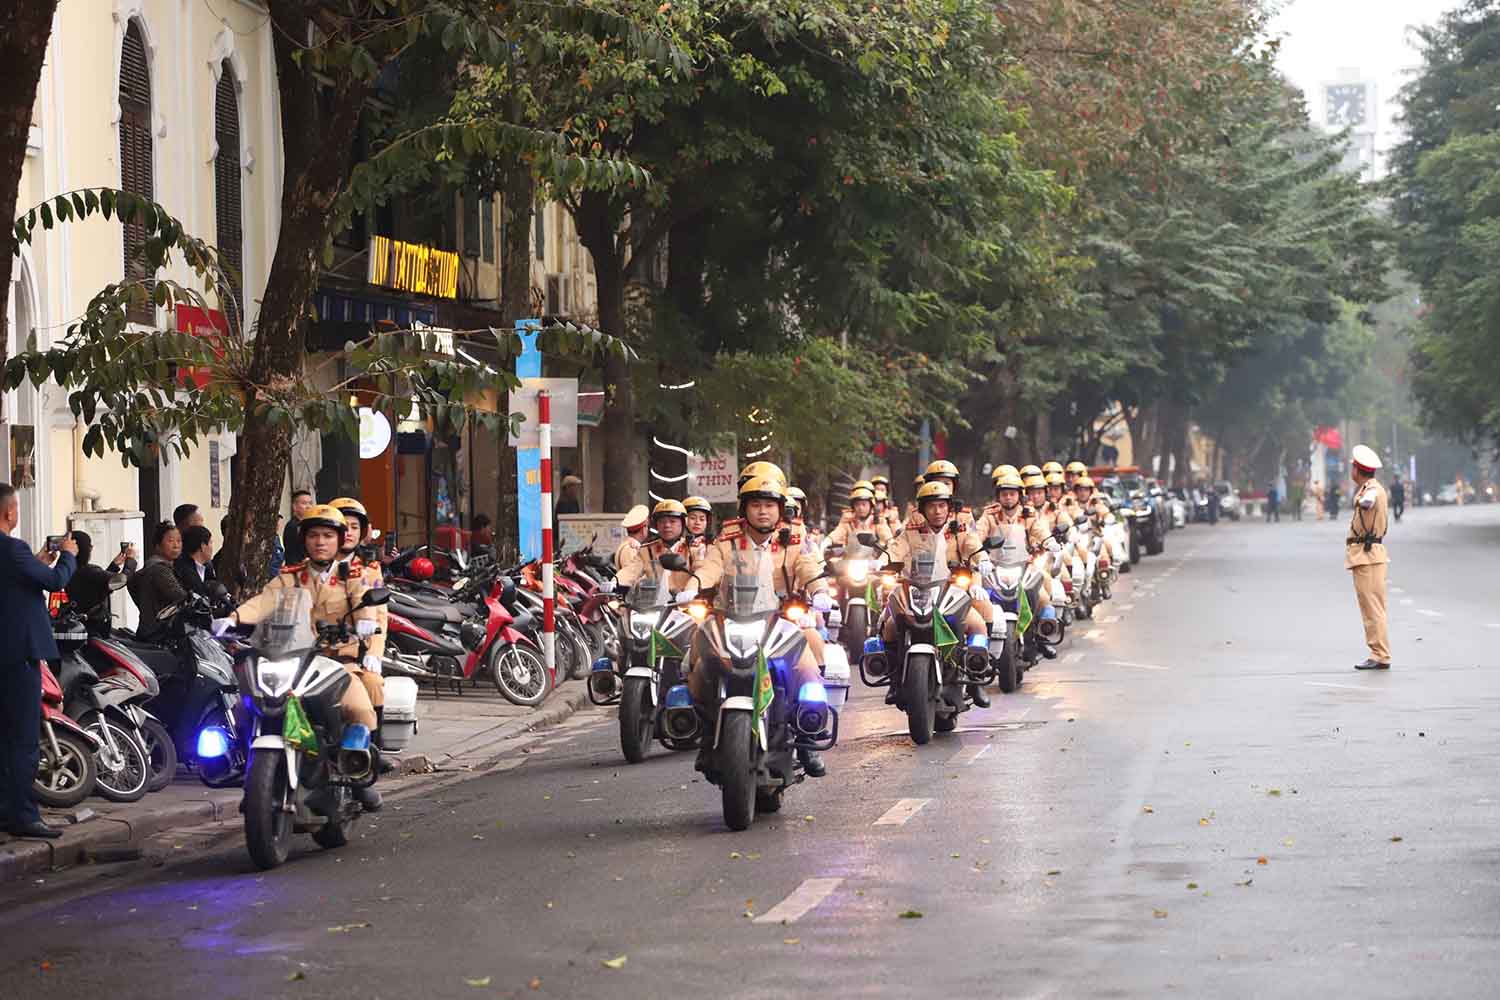 12 xe mô tô phân khối lớn của lực lượng CSGT diễu hành sau khi kết thúc lễ ra quân.